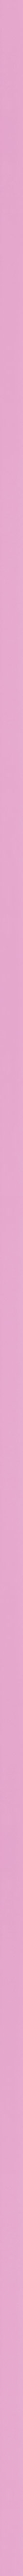 Μοντέρνα ροζ κορνίζα frame